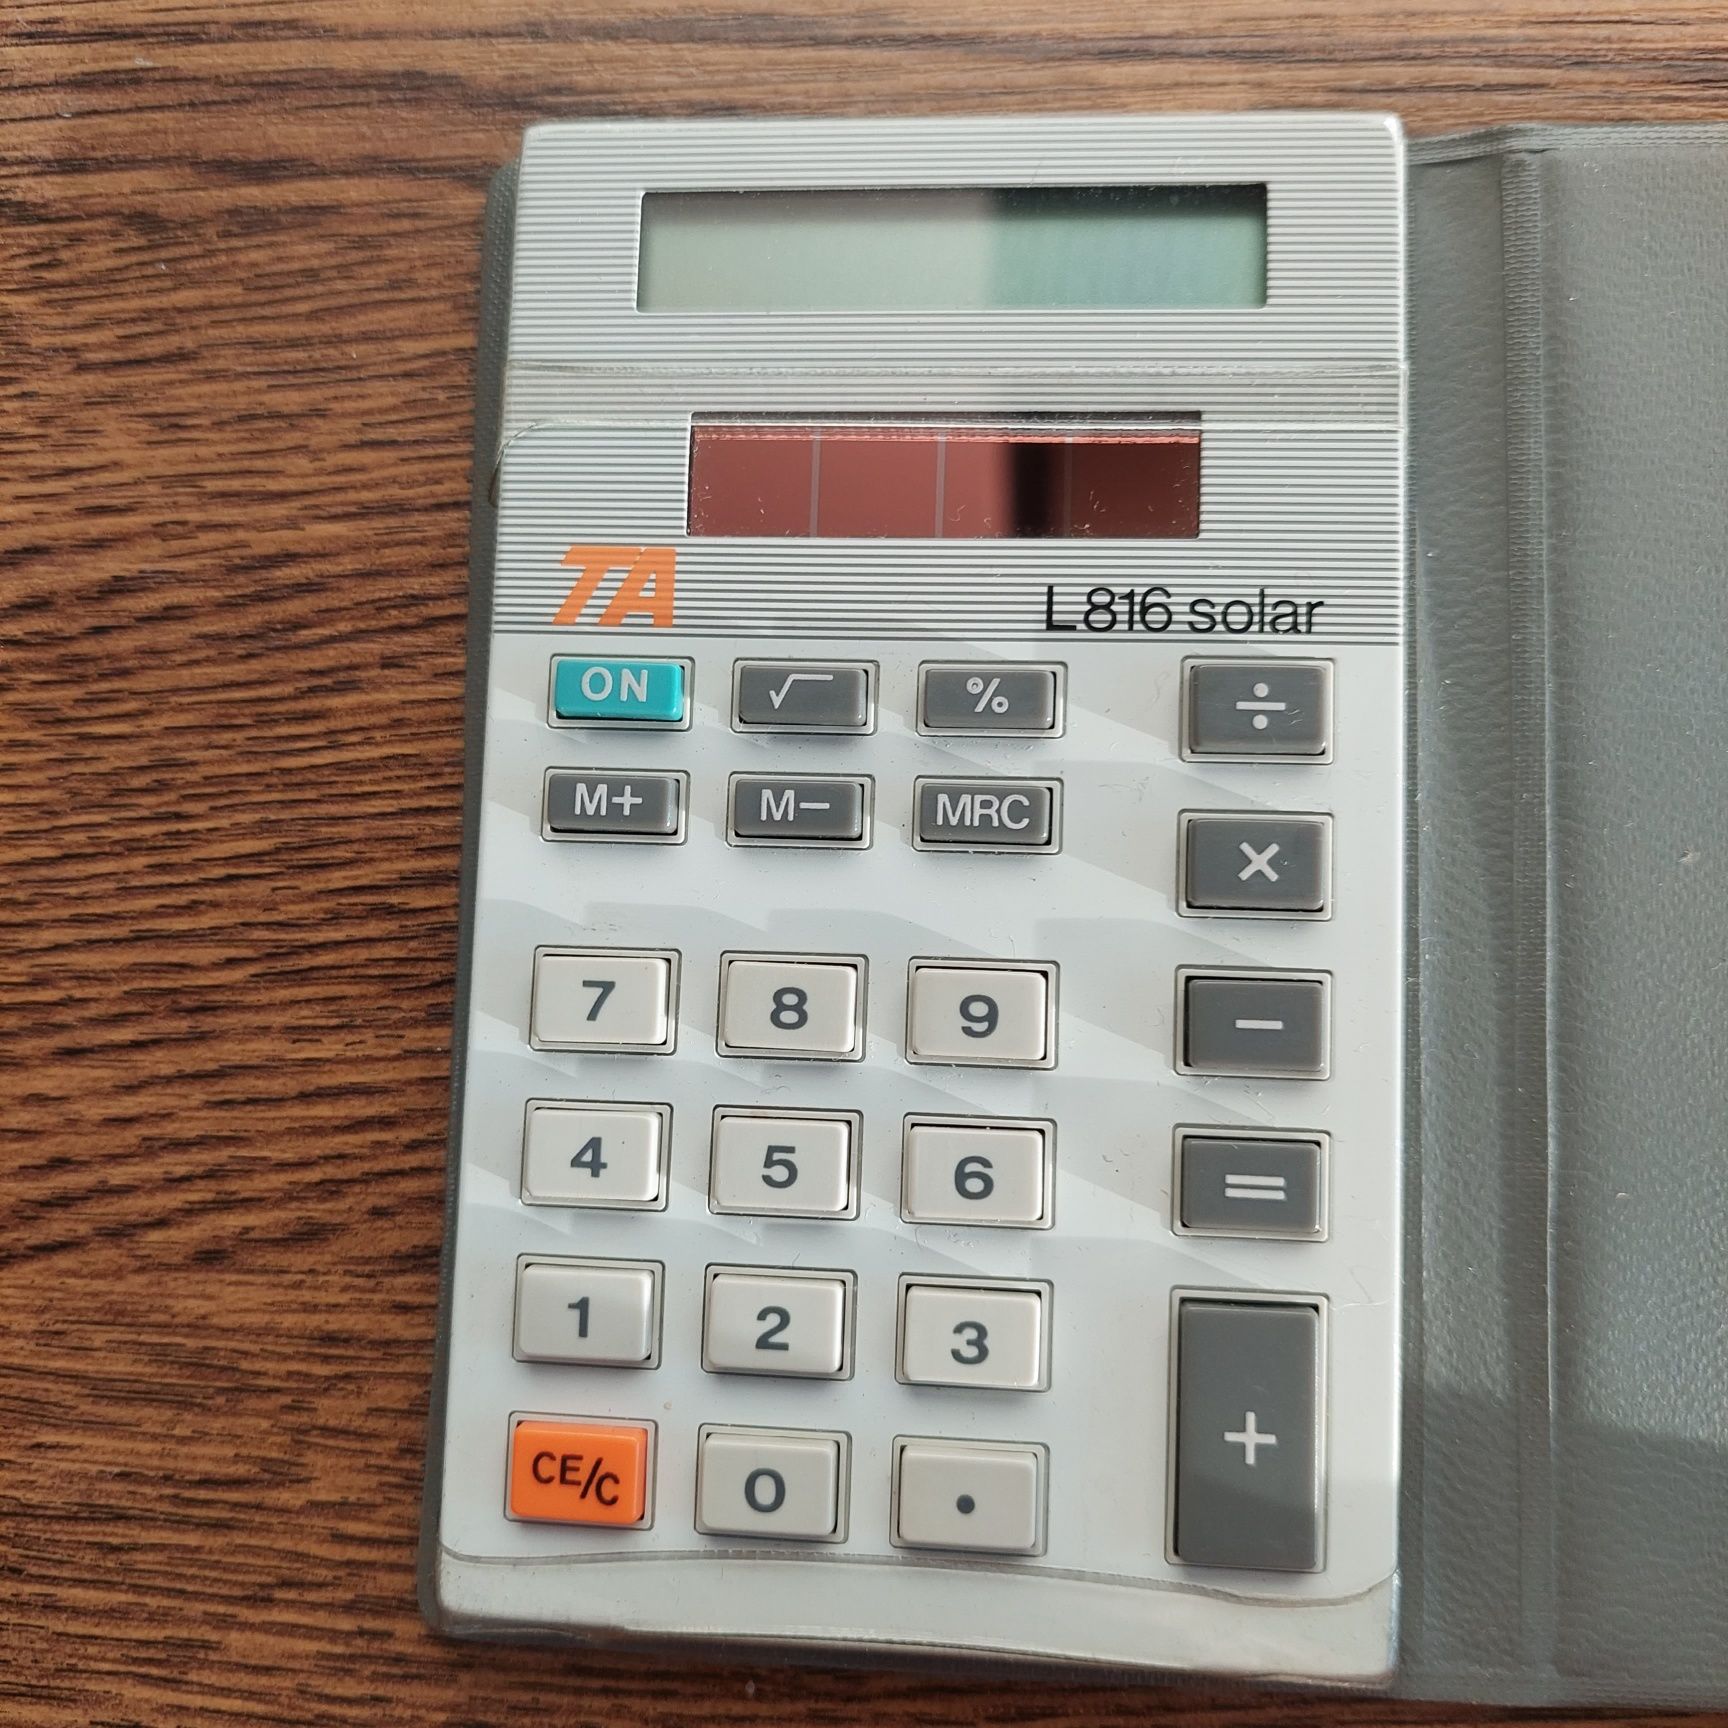 Kalkulator z lat PRL l816 solar Triumph Adler